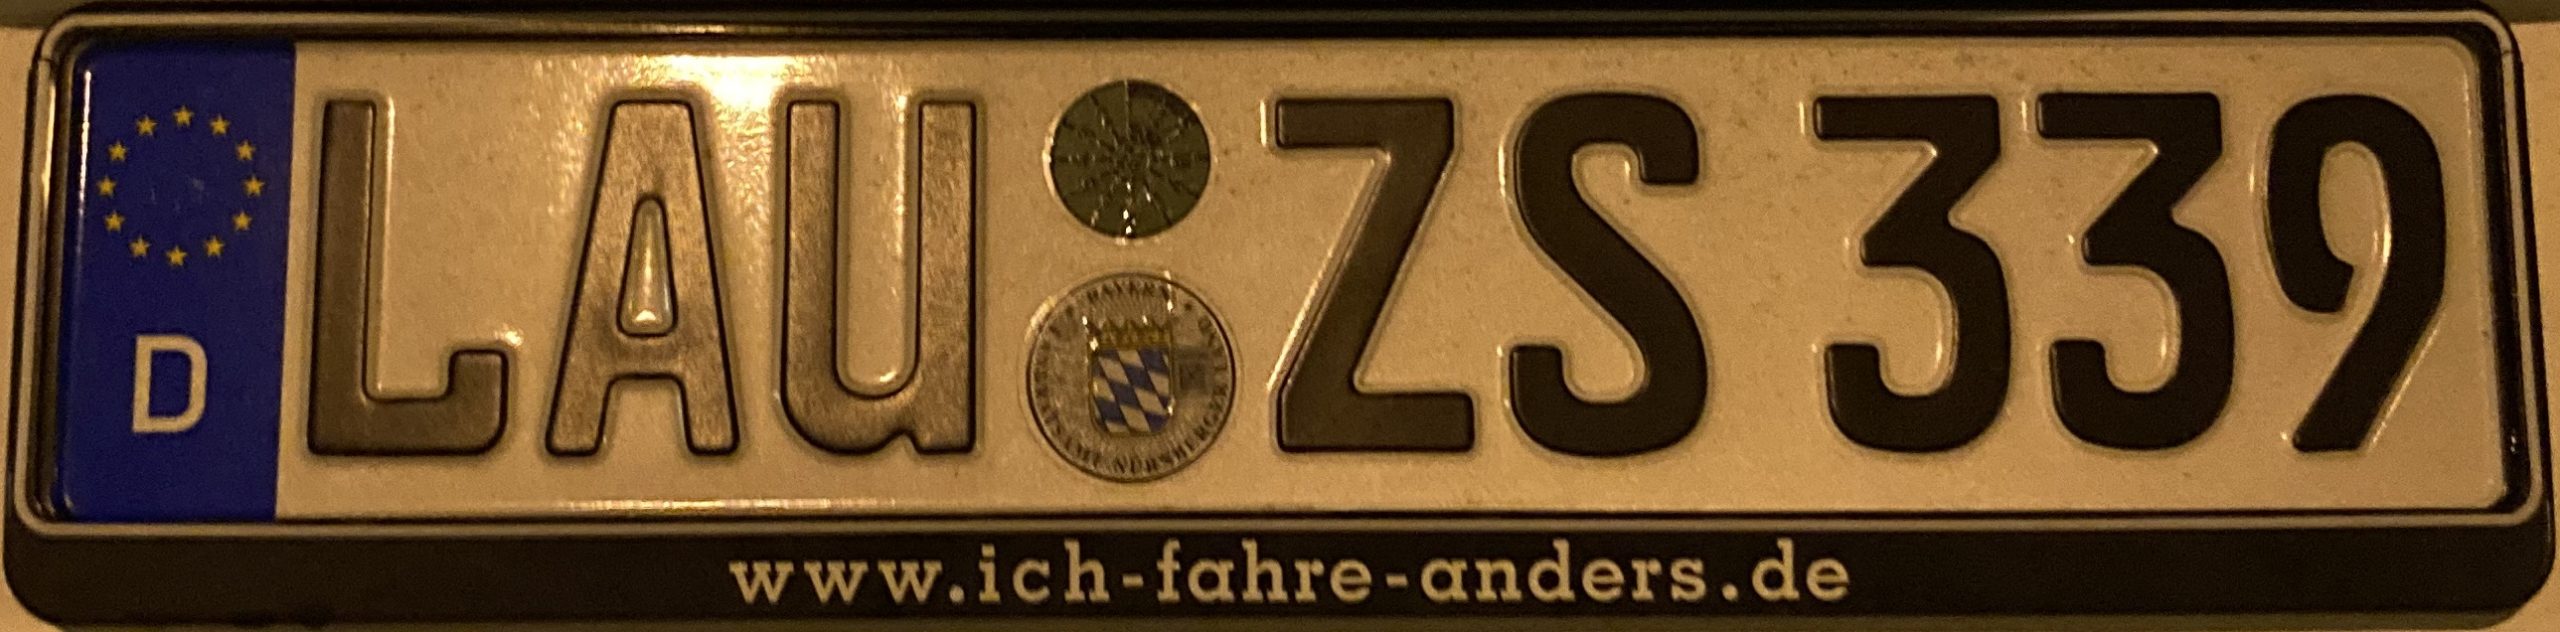 Registrační značky Německo - LAU - Nürnberger Land, foto: www.podalnici.cz